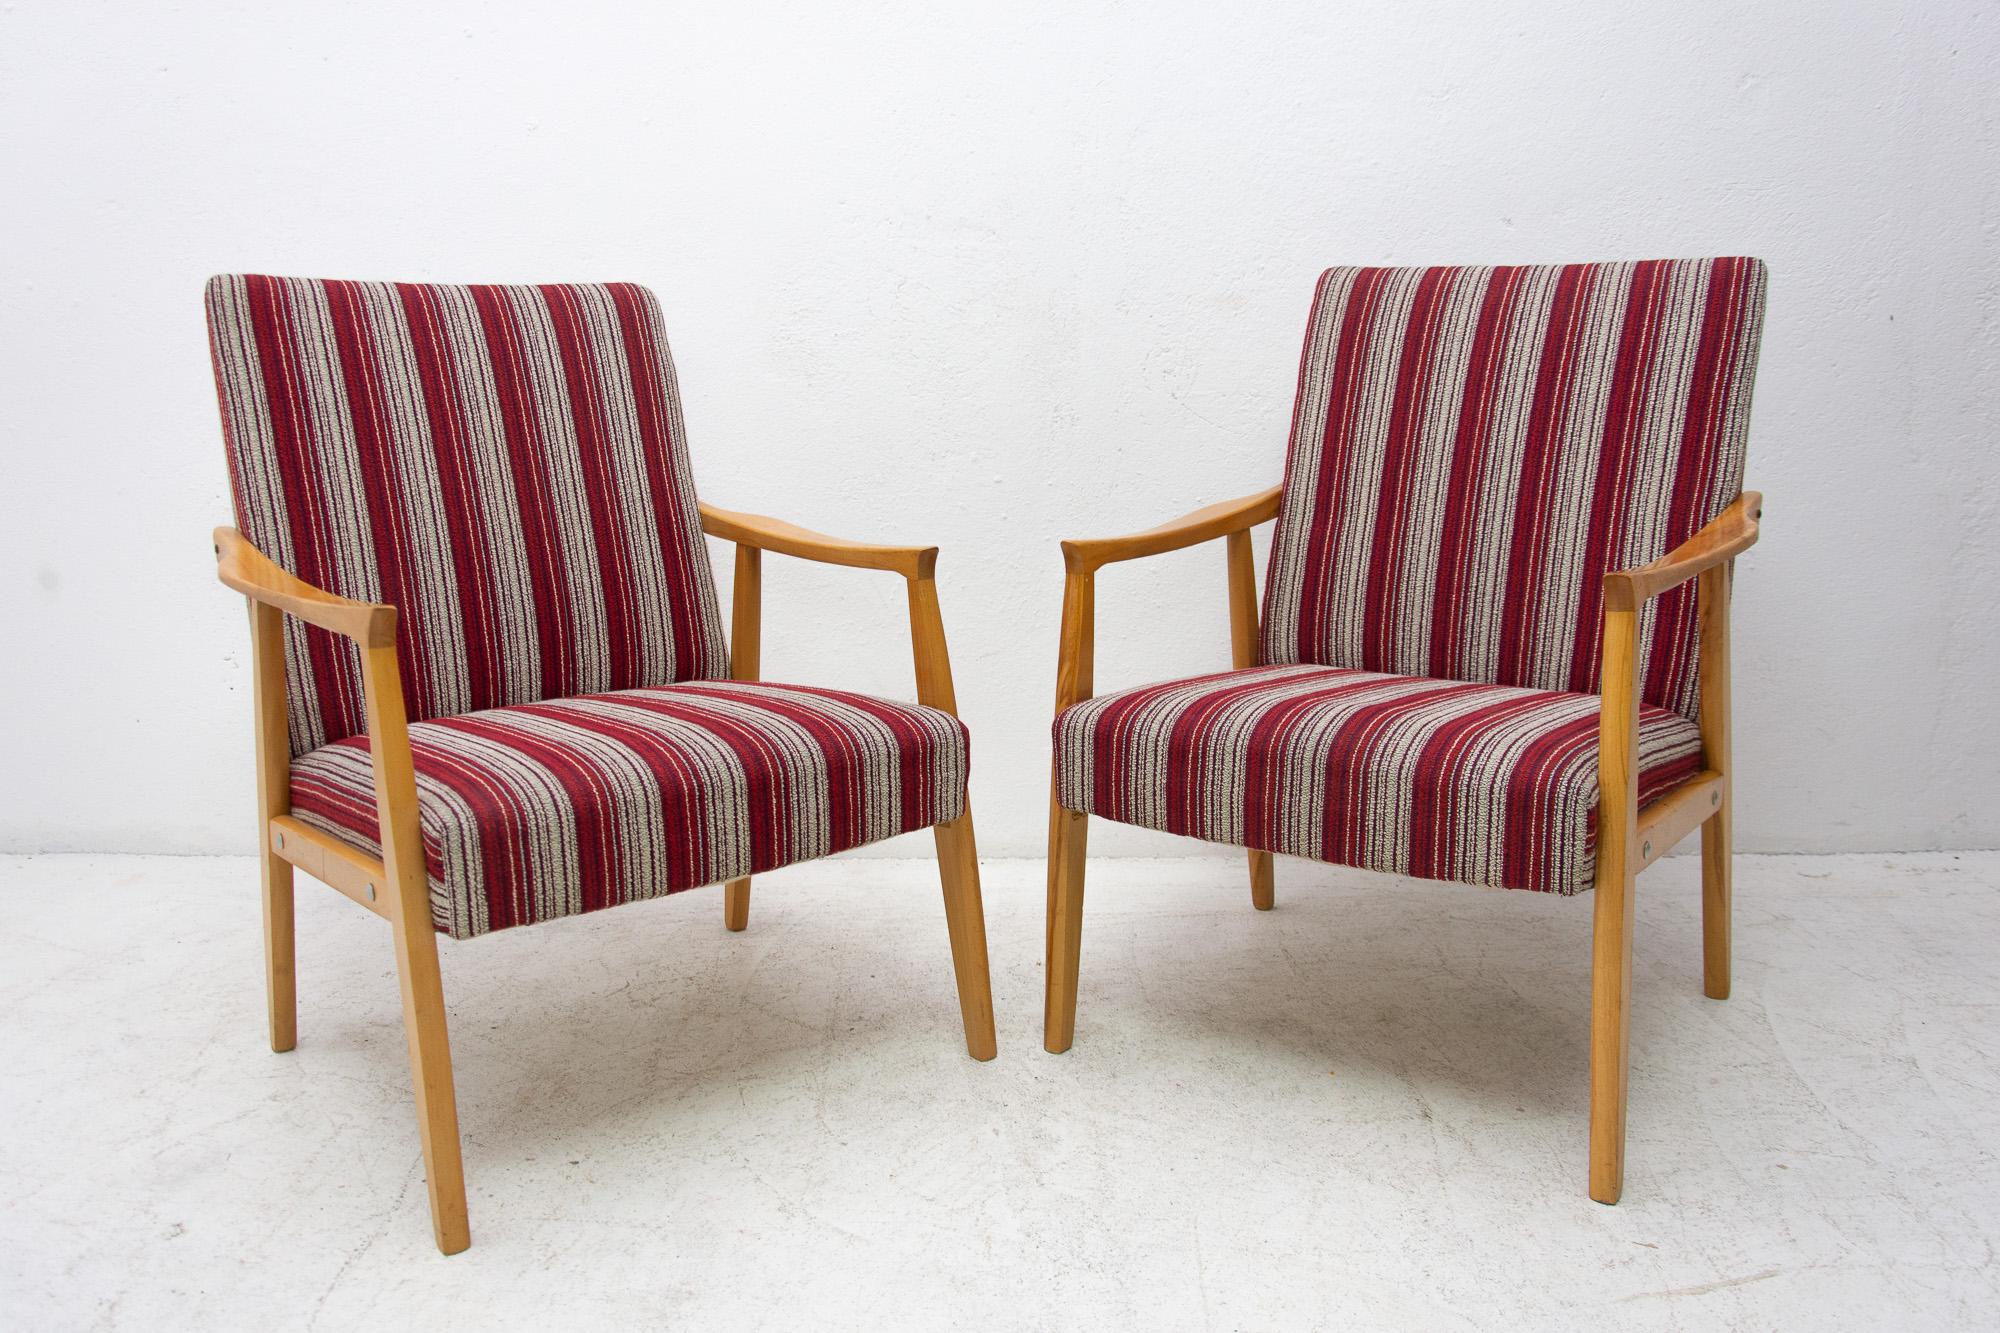 Une paire de fauteuils de style danois, fabriqués dans l'ancienne Tchécoslovaquie dans les années 1960. La structure est en bois de hêtre et les chaises ont un rembourrage original. Les chaises sont en bon état vintage, elles montrent de légers